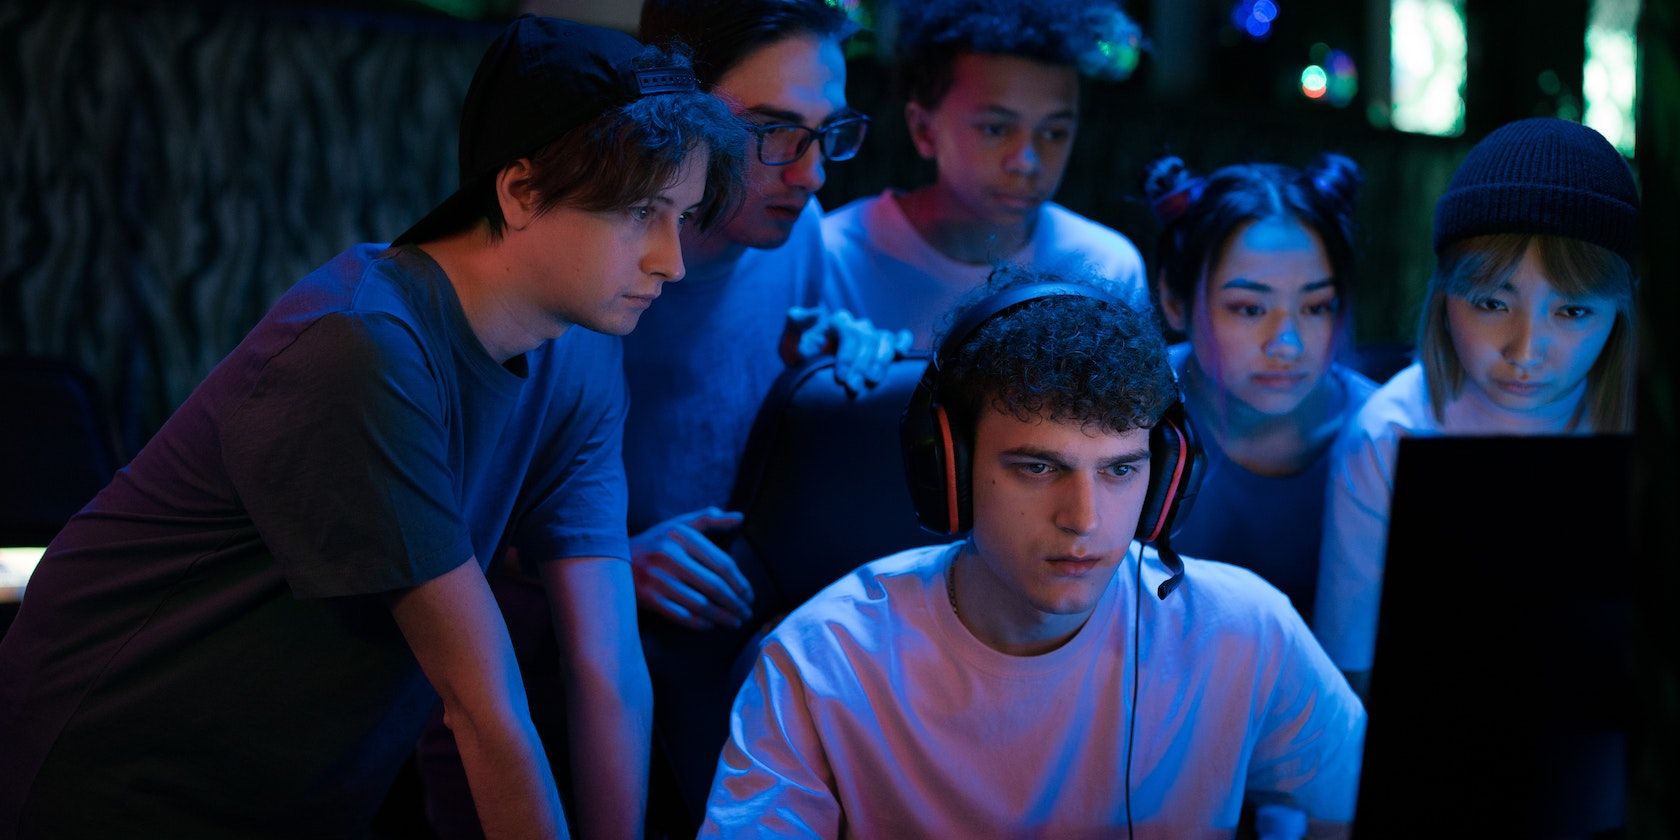 Một nhóm game thủ nhìn chằm chằm vào màn hình